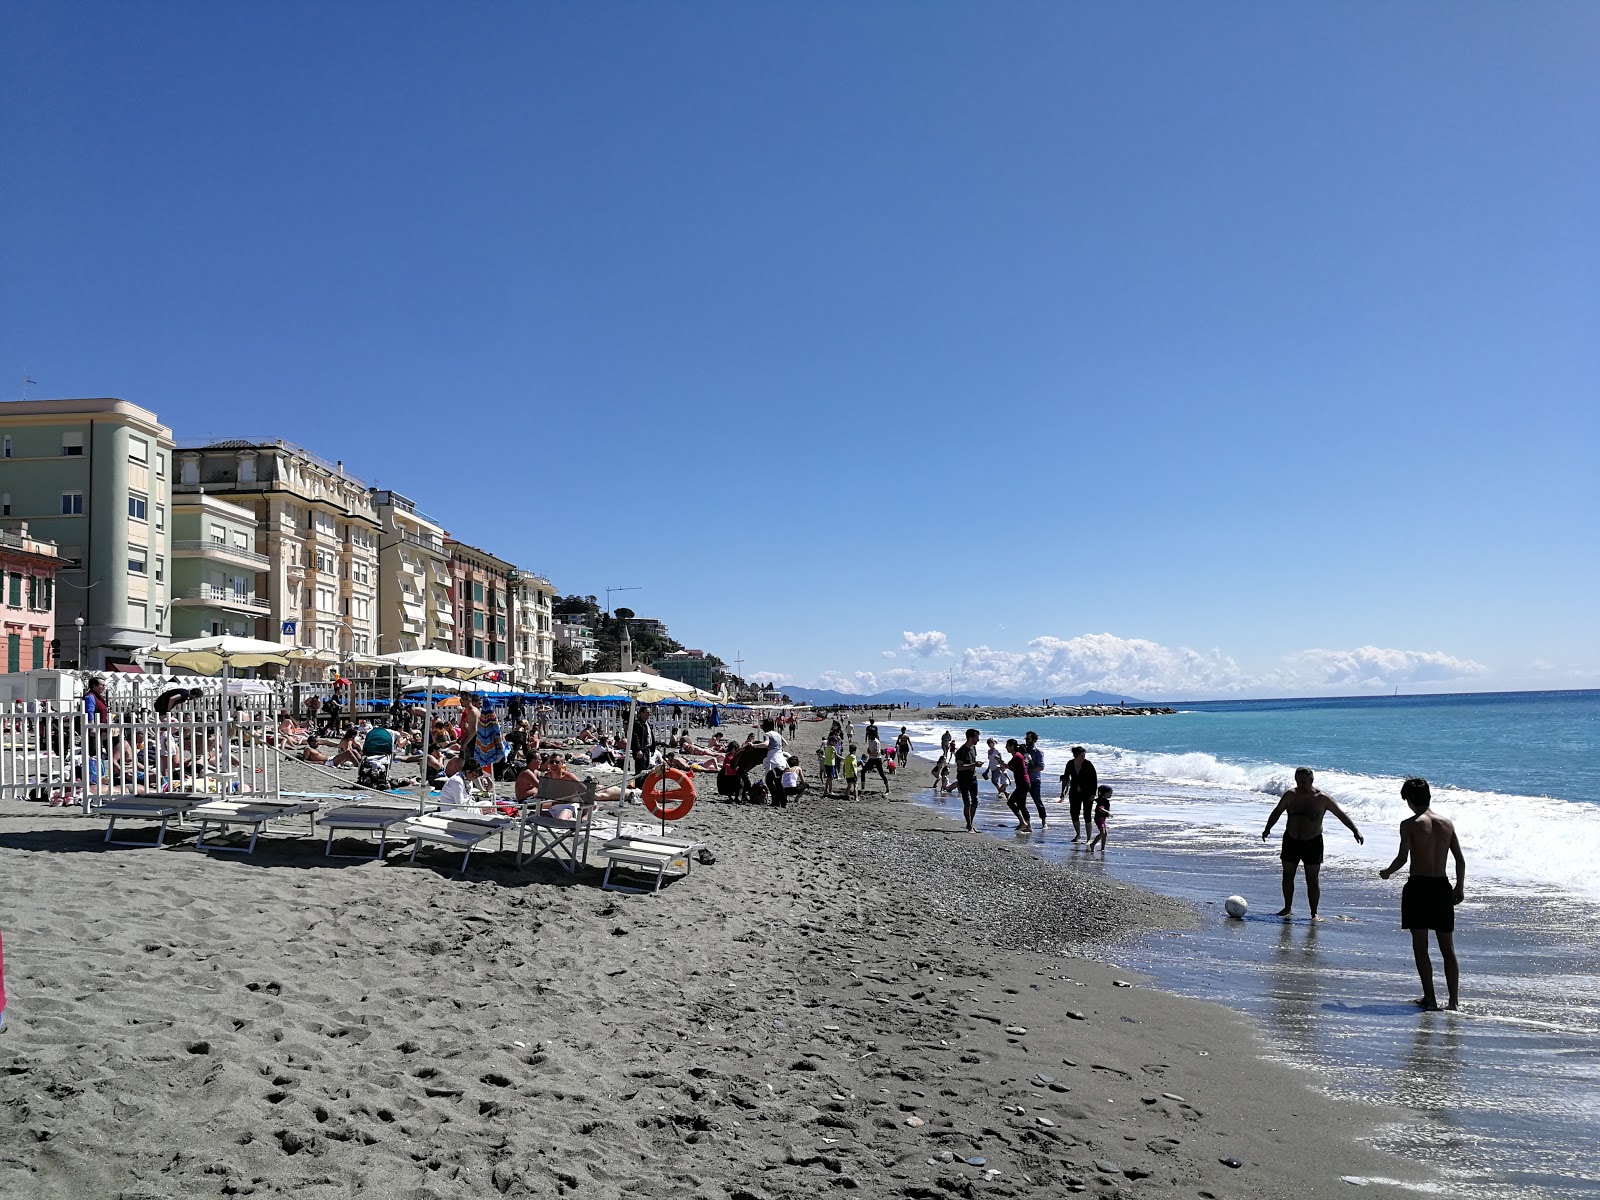 Foto de Spiaggia Varazze con muy limpio nivel de limpieza